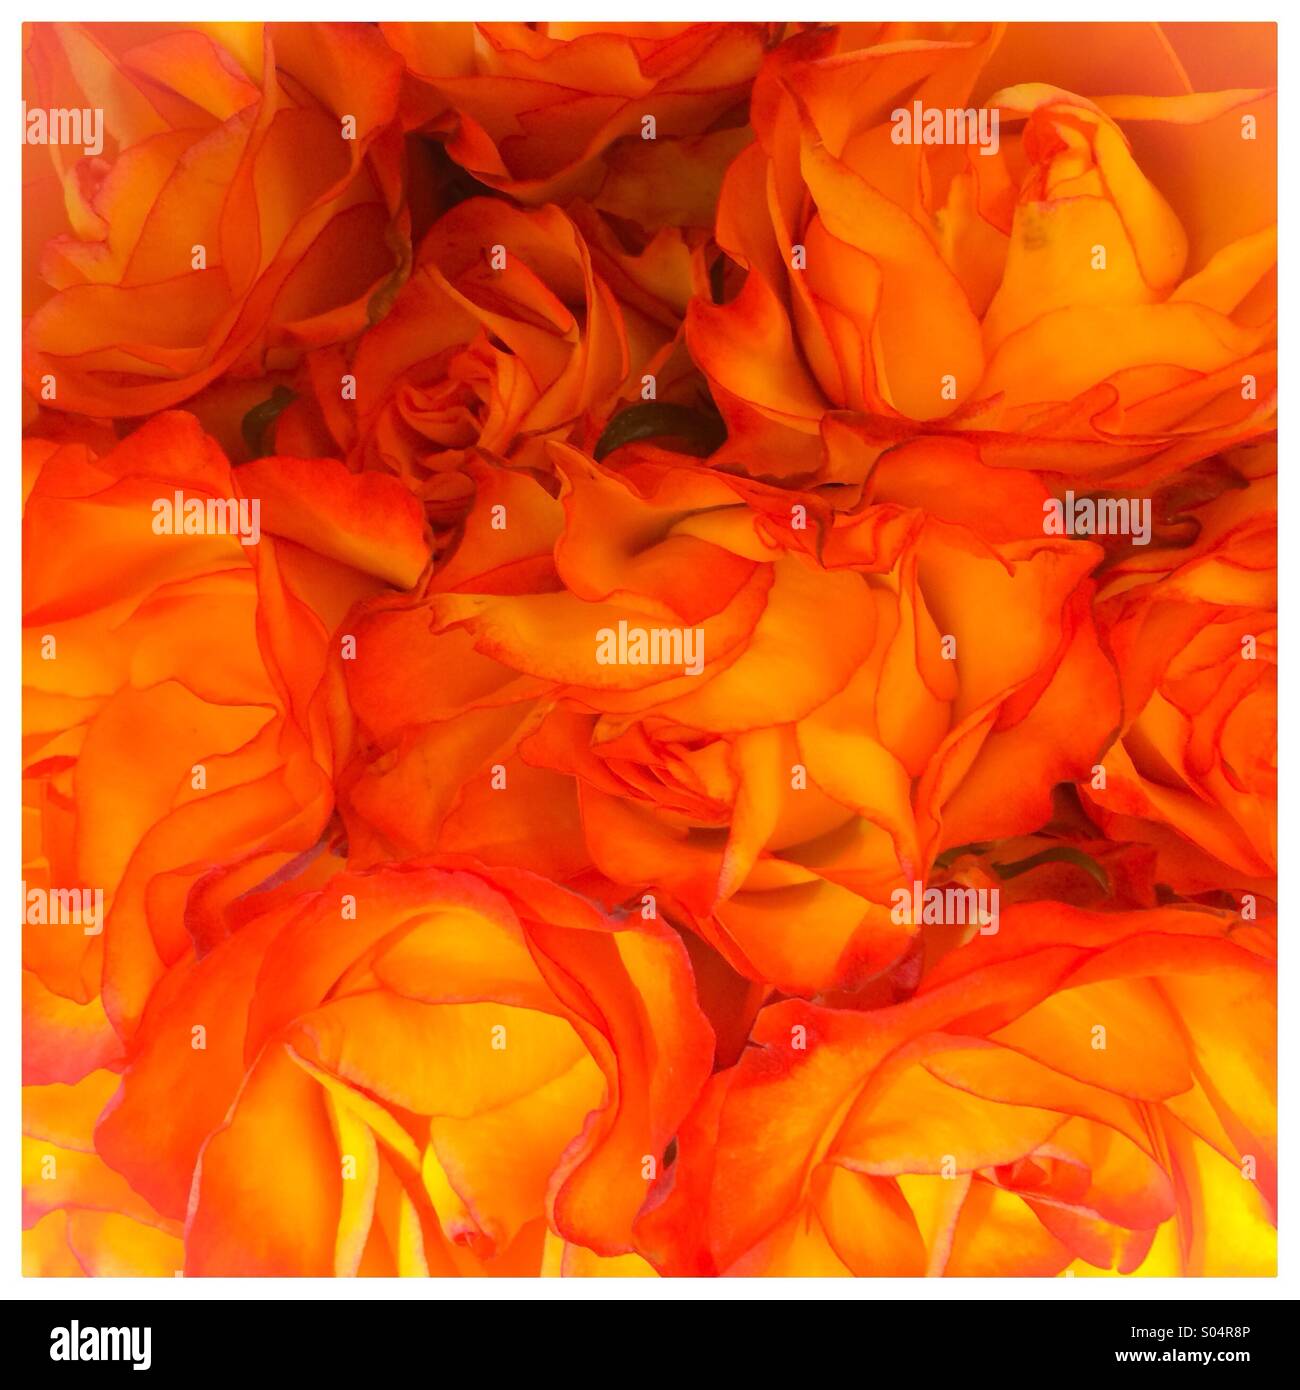 Orange rose background Stock Photo